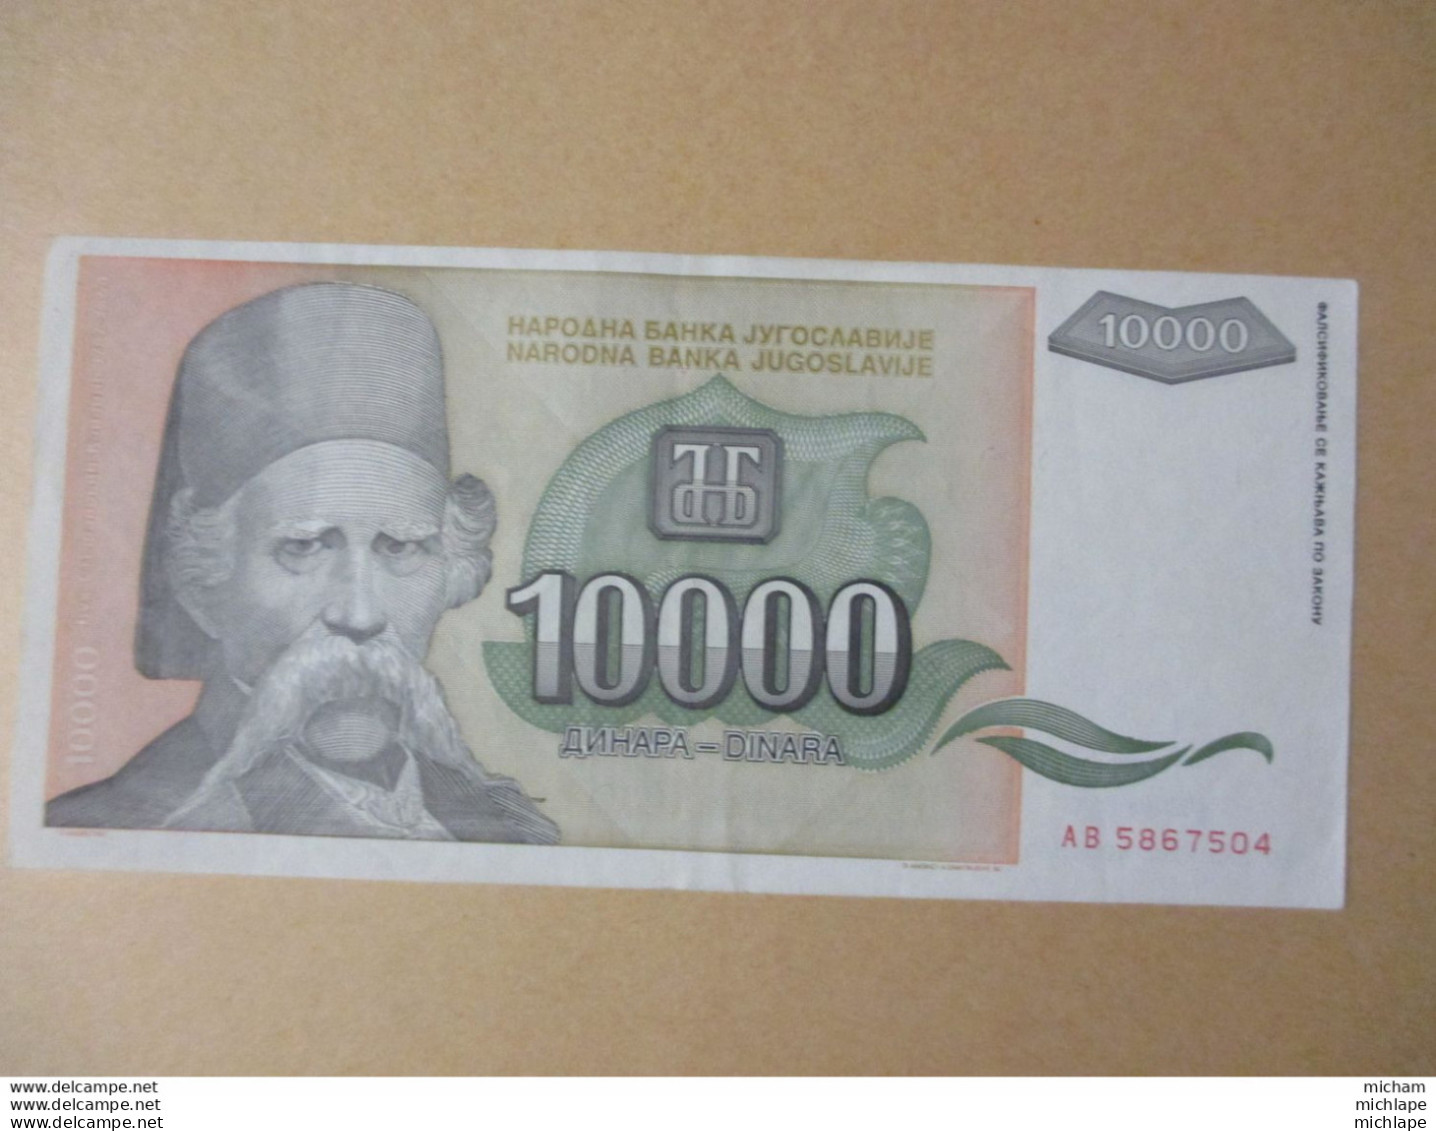 YOUGOSLAVIE 10000 DINARA 1993 TRES BEL ETAT - Yugoslavia